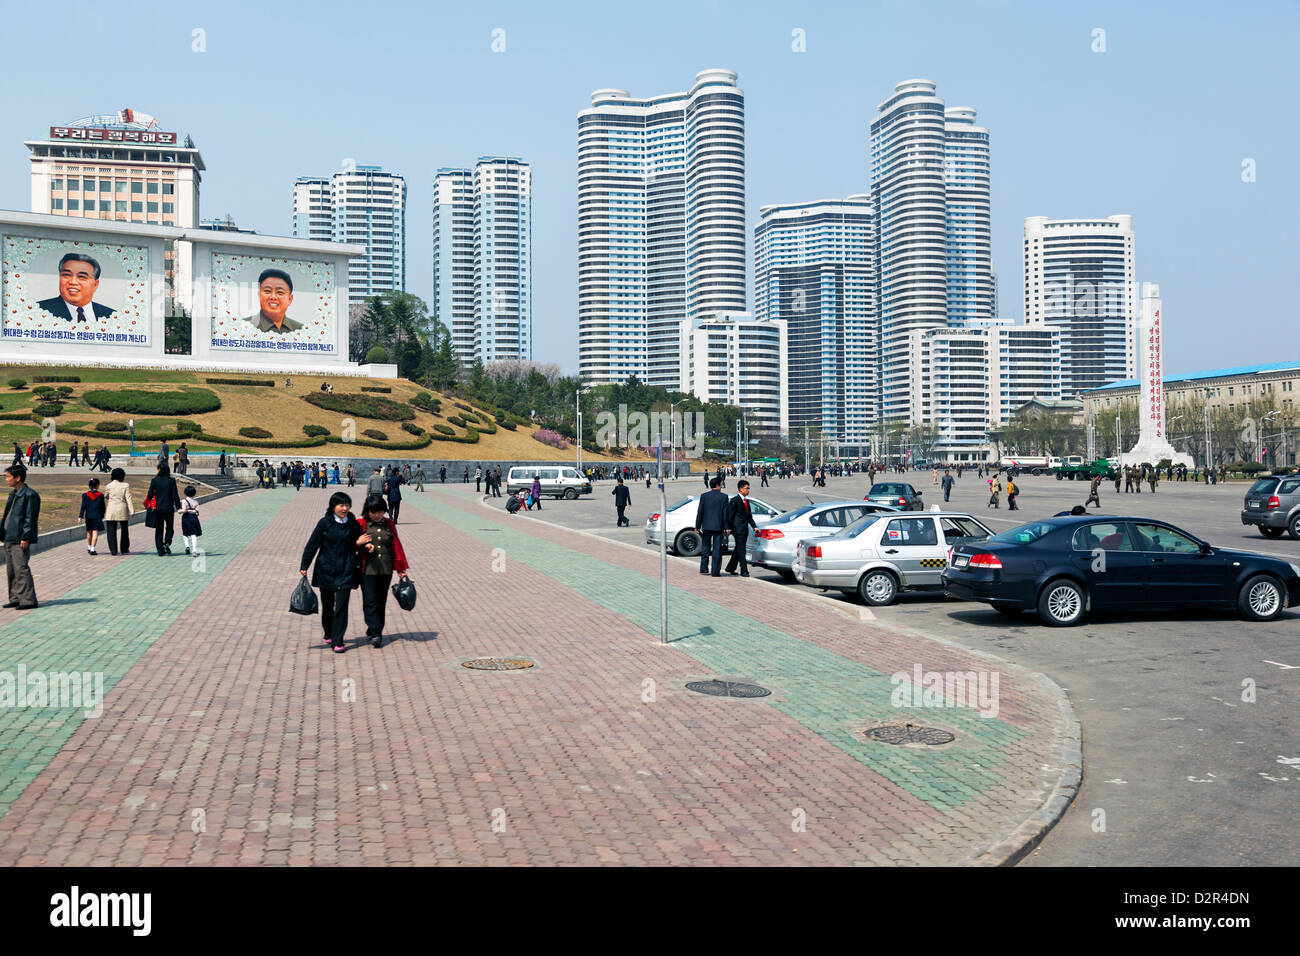 Scène de rue ville typique, Pyongyang, République populaire démocratique de Corée (RPDC), la Corée du Nord, d'Asie Banque D'Images